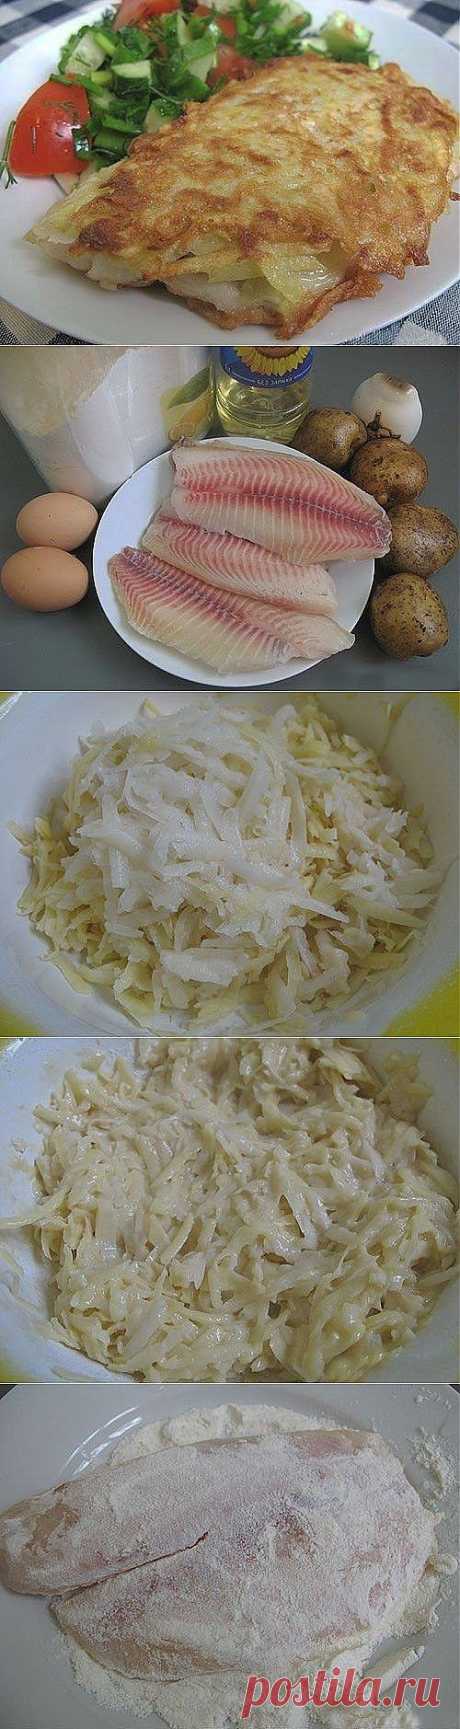 Рыба в картофельной корочке